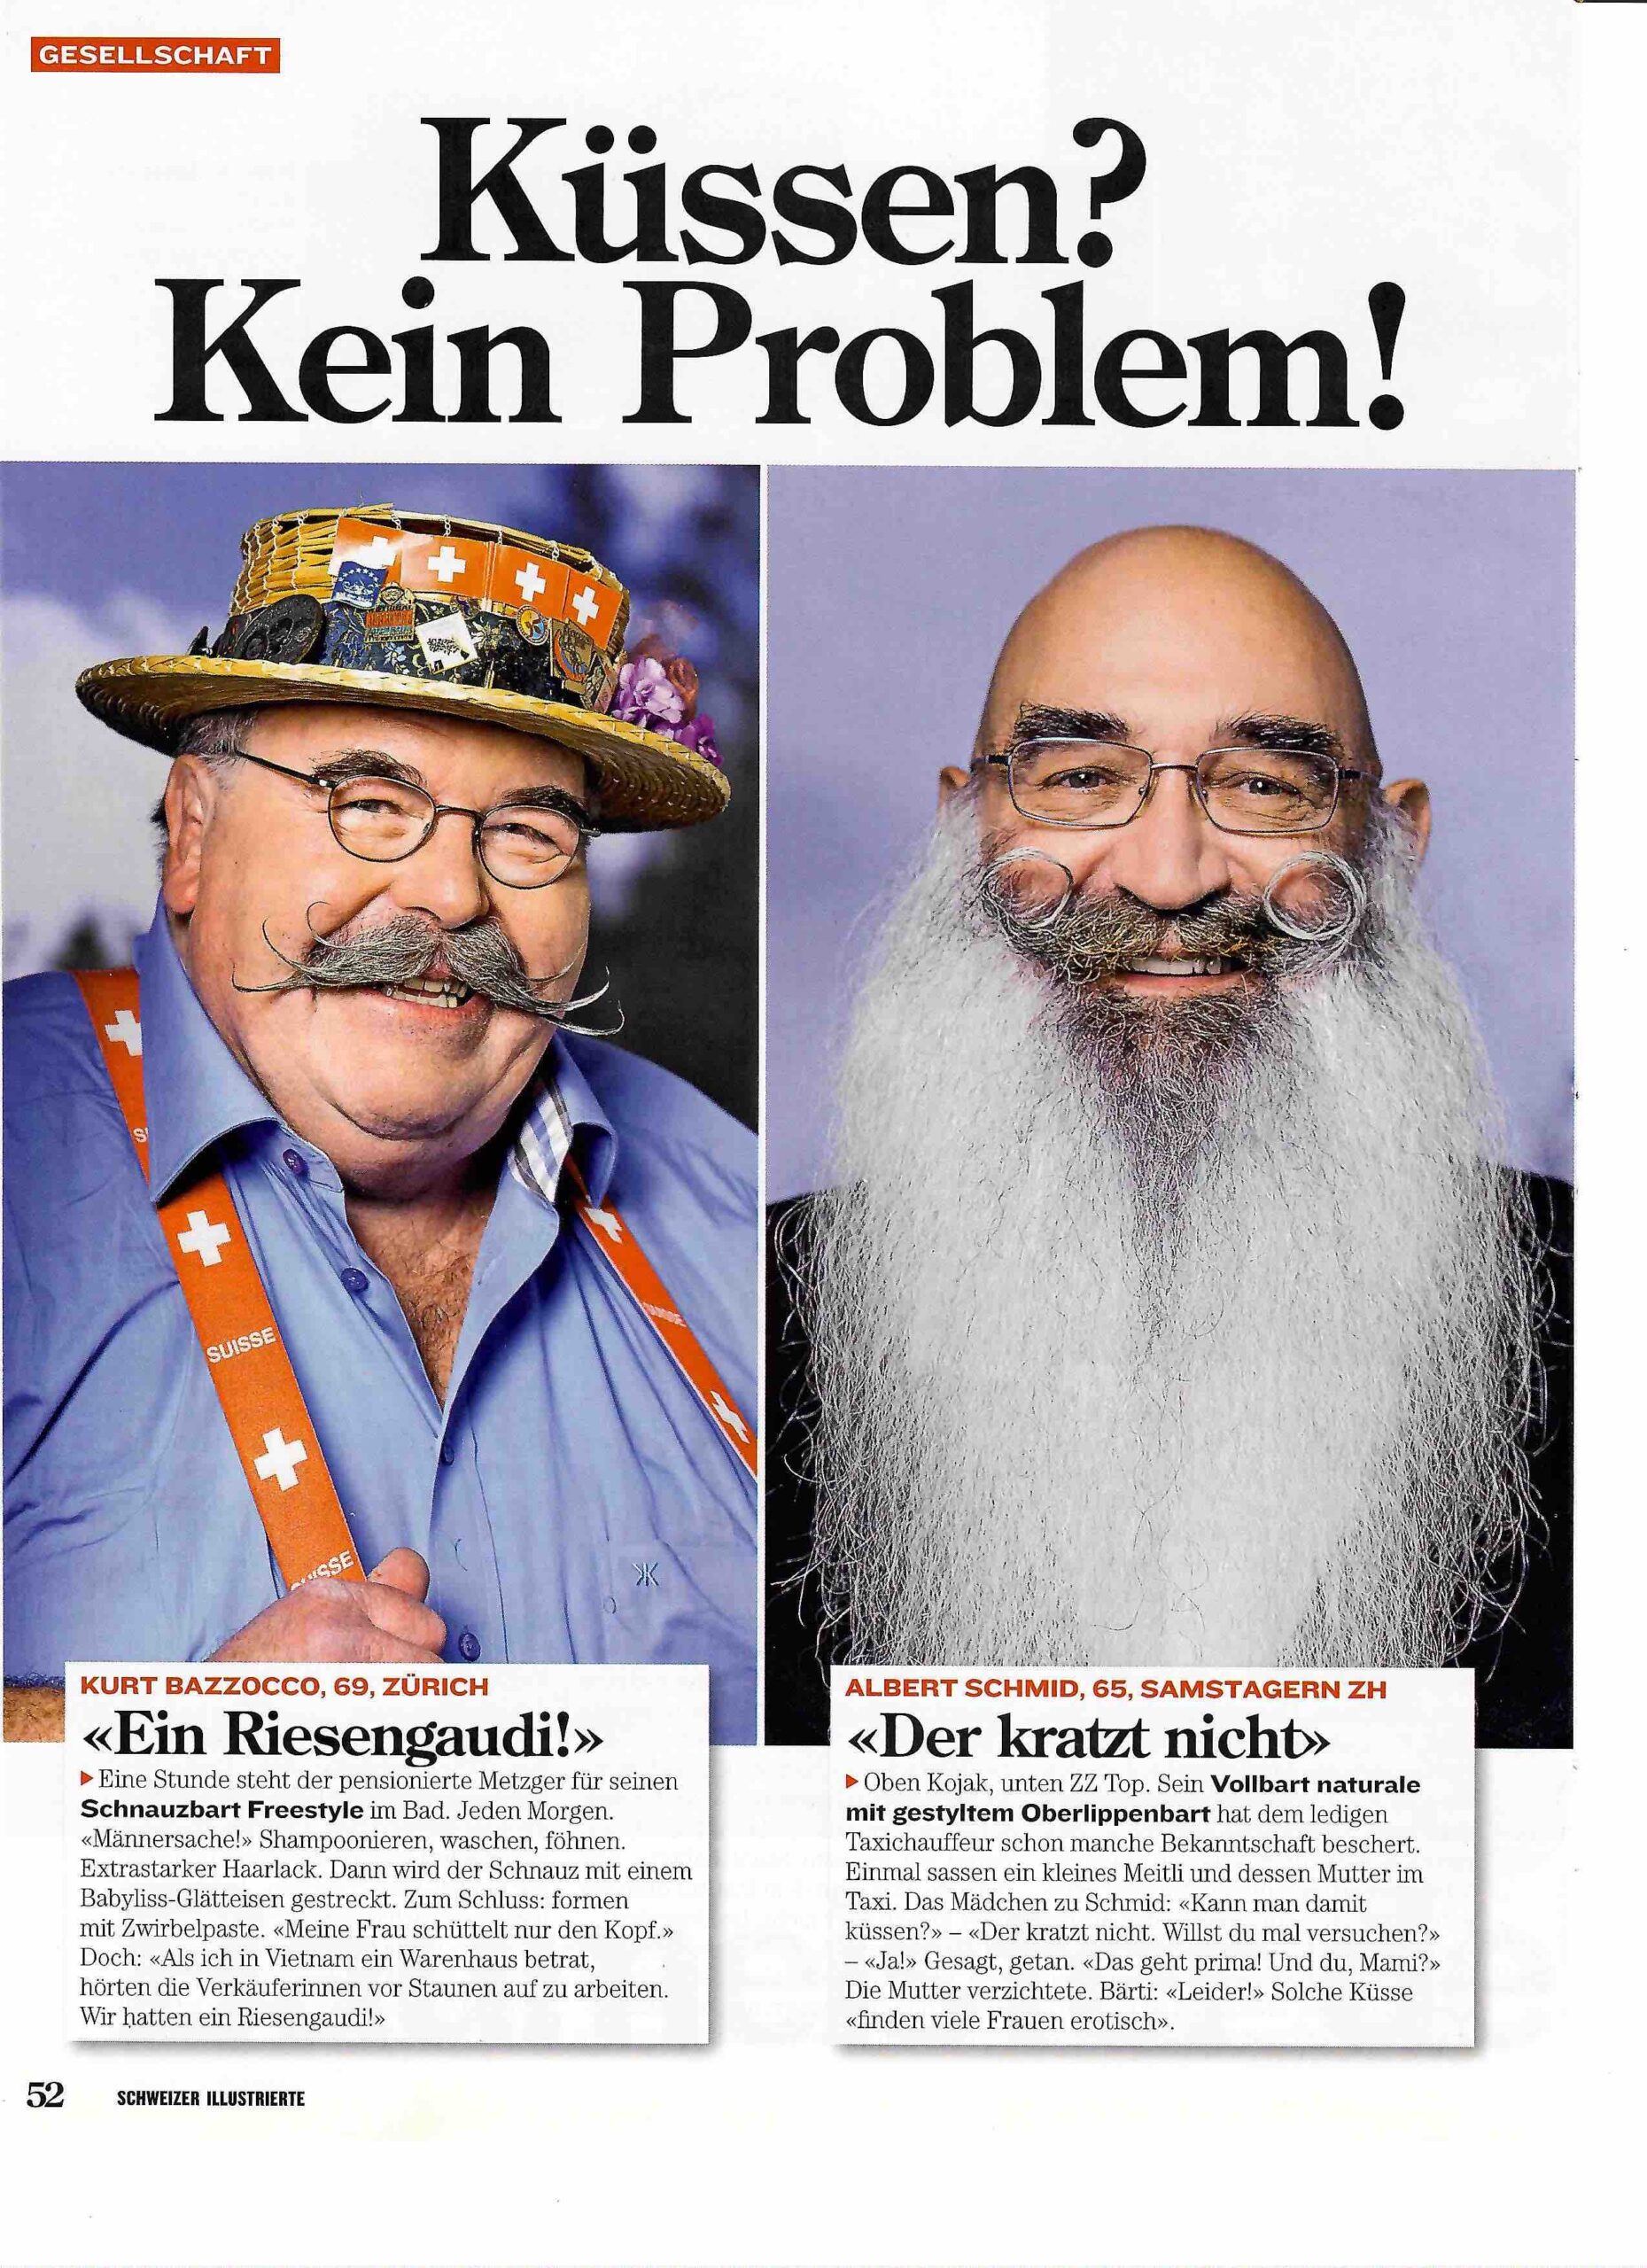 Schweizer Illustrierte Artikel 17. September 2012 mit Kurt Bazzocco (Schnauzbart Frestyle) und Albert Schmid (Vollbart naturale mit getyltem Oberlippenbart)